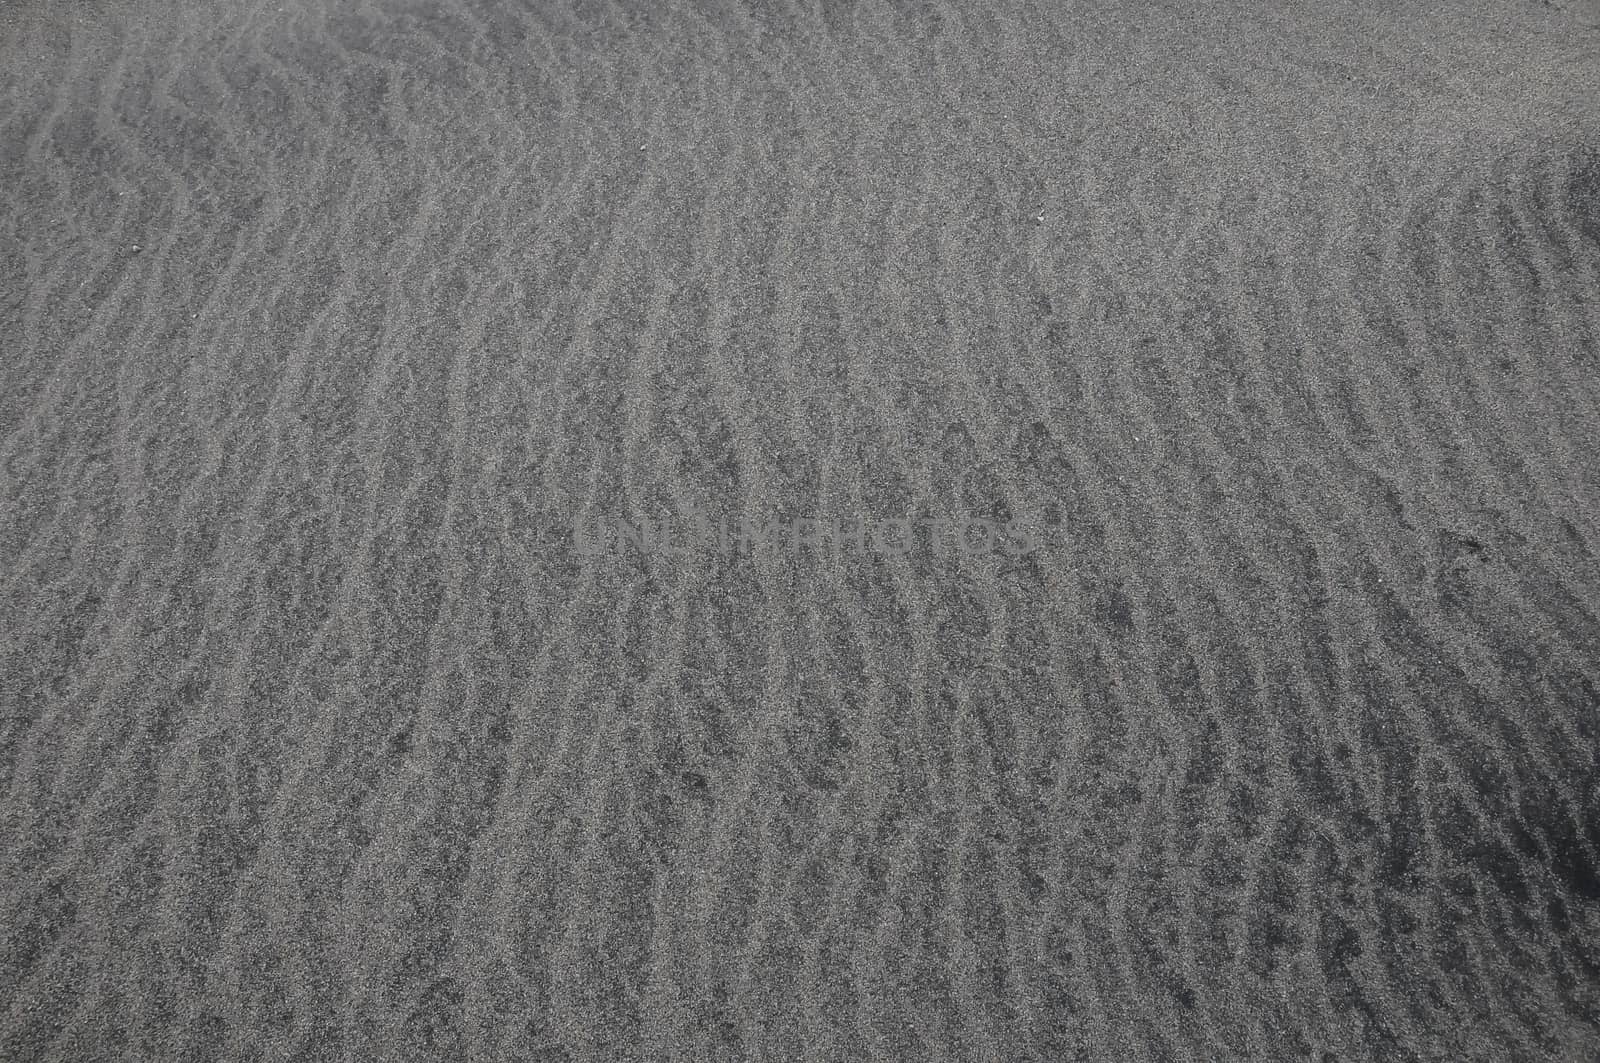 Sand Background by underworld